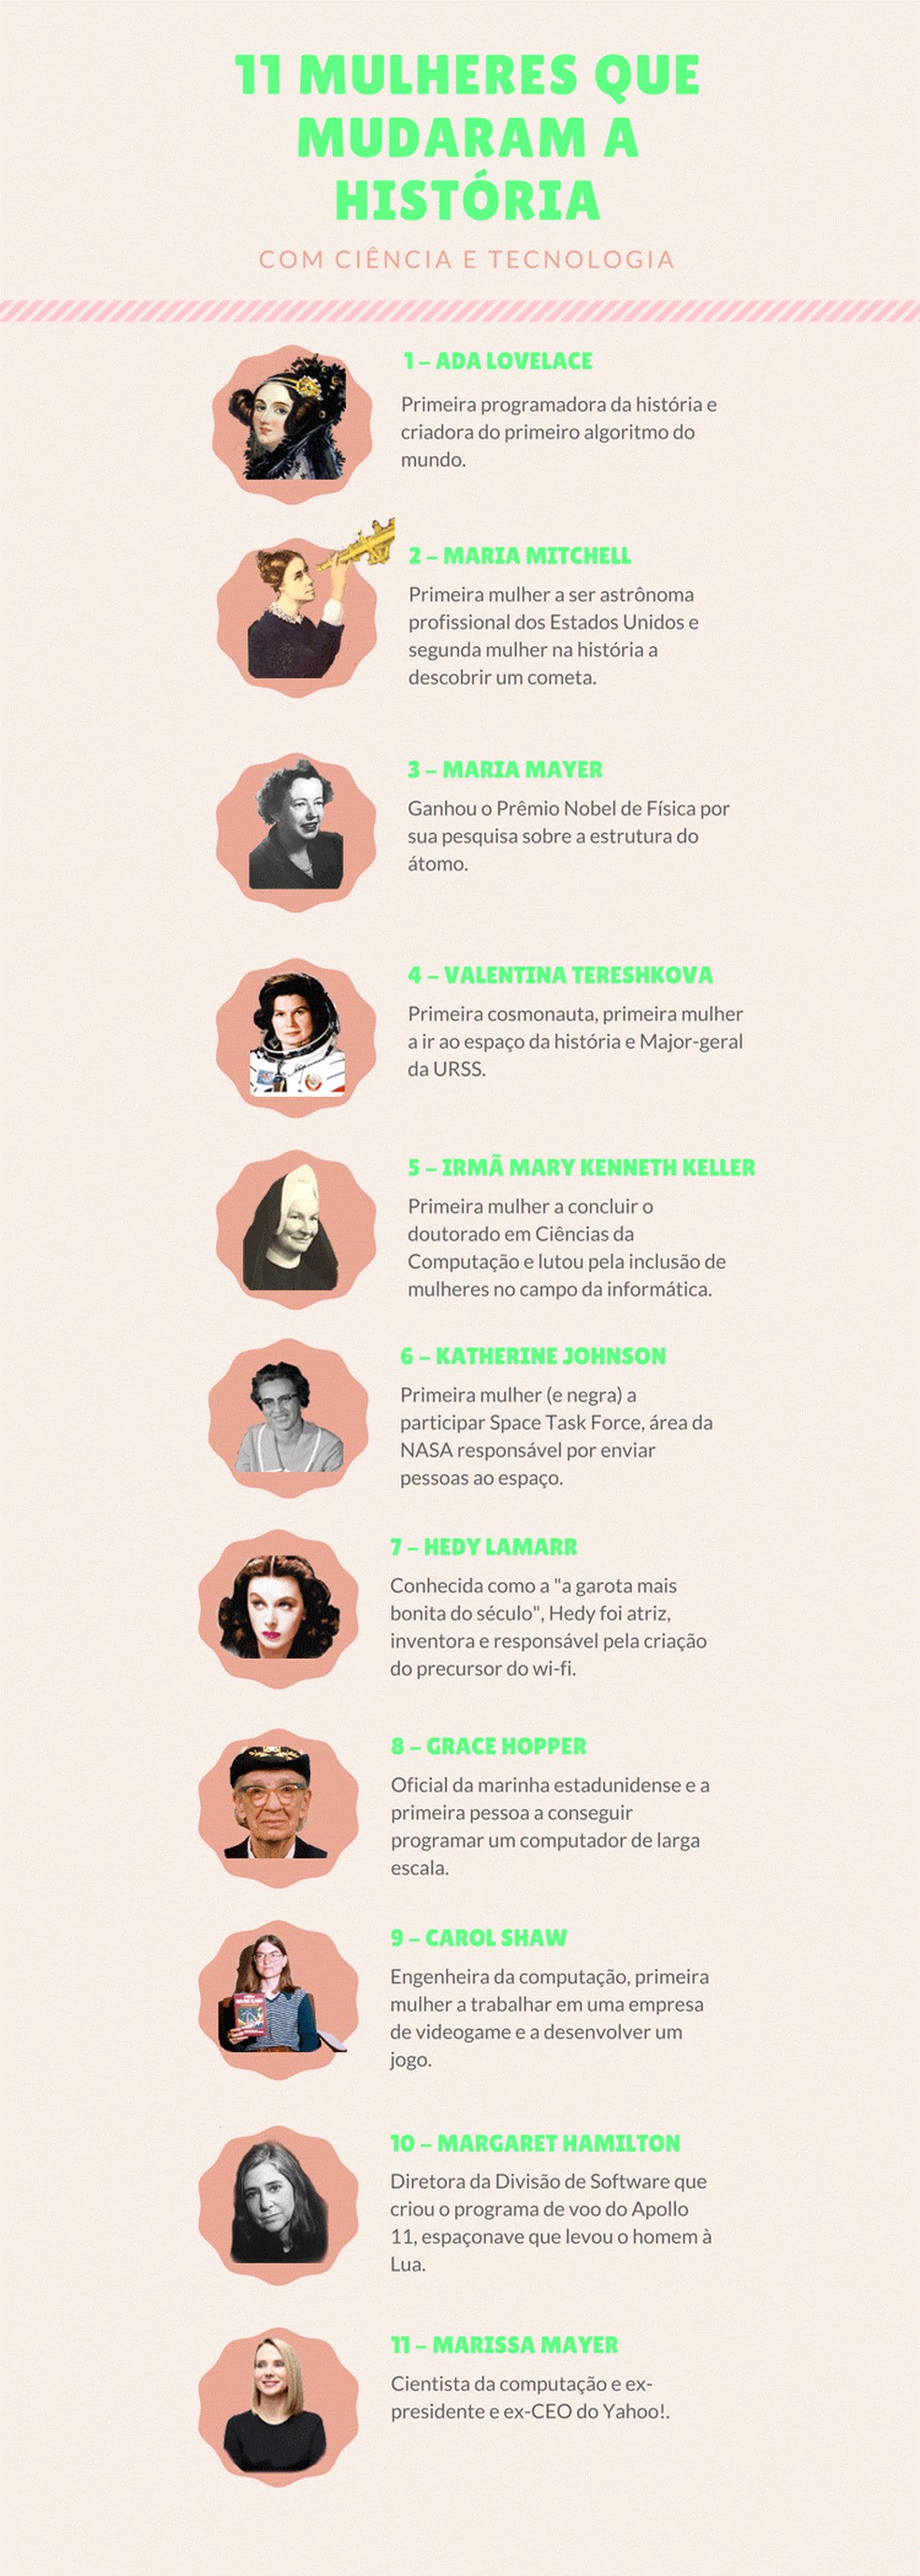 11 mulheres que mudaram a história mundial com ciência e tecnologia (Foto: Quero Bolsa)